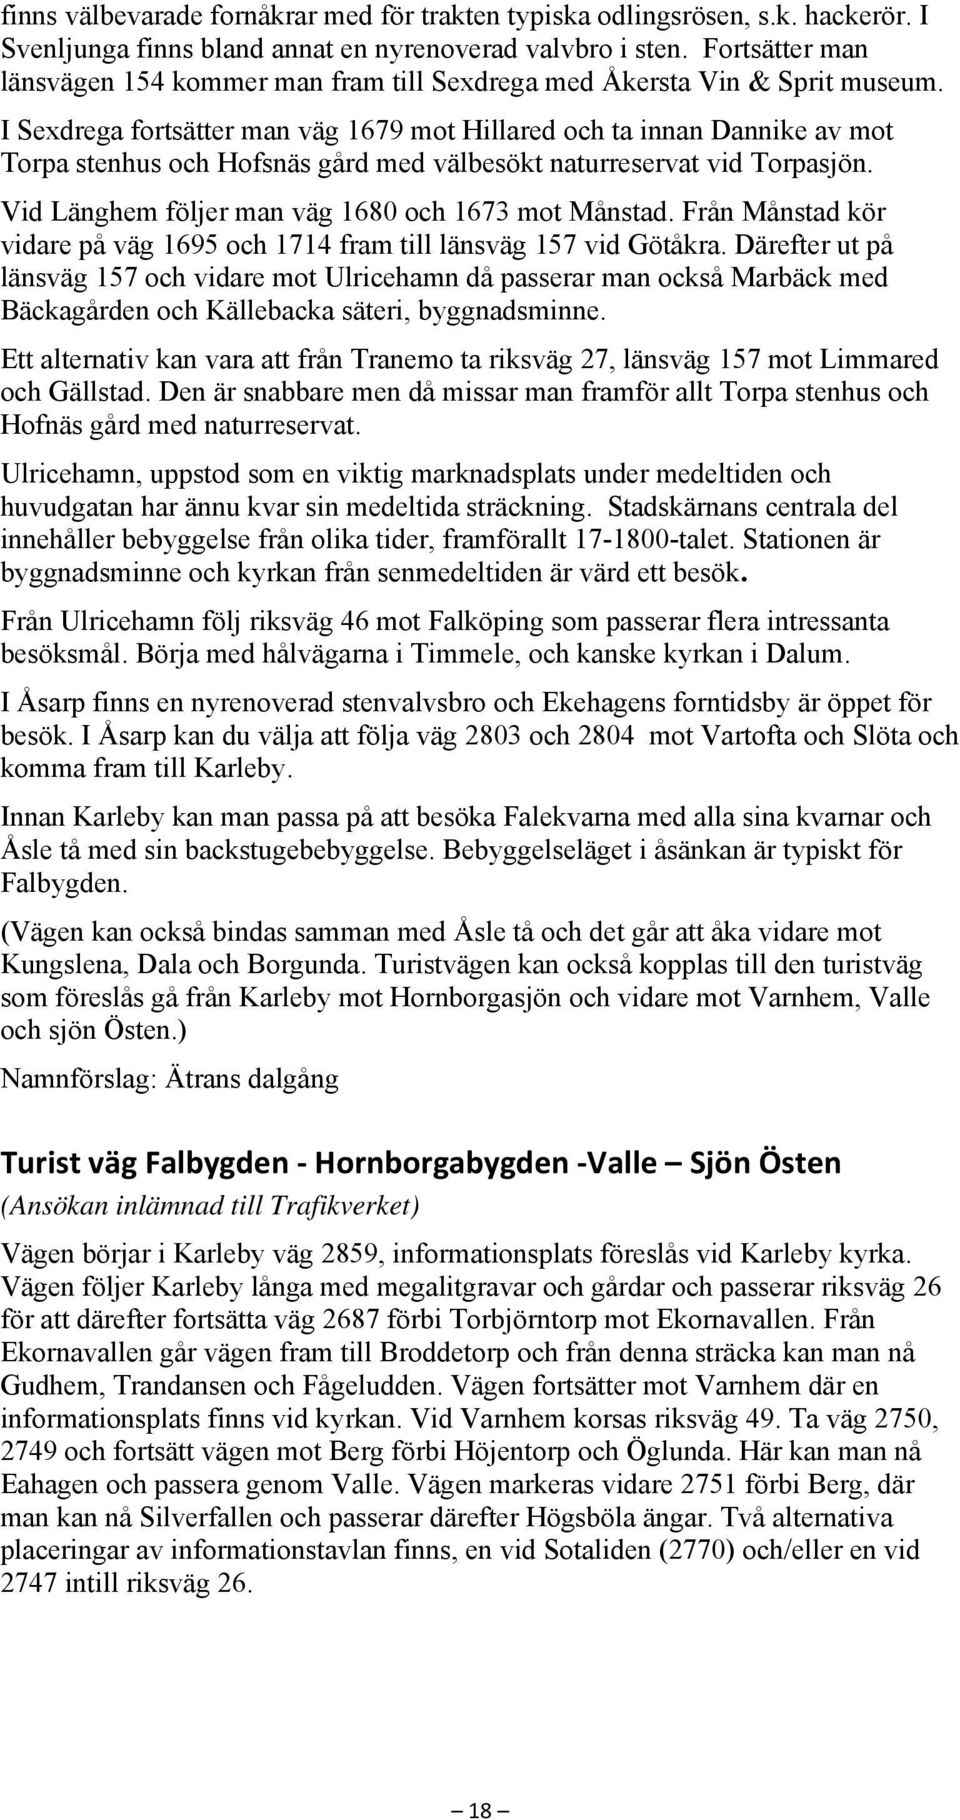 I Sexdrega fortsätter man väg 1679 mot Hillared och ta innan Dannike av mot Torpa stenhus och Hofsnäs gård med välbesökt naturreservat vid Torpasjön.